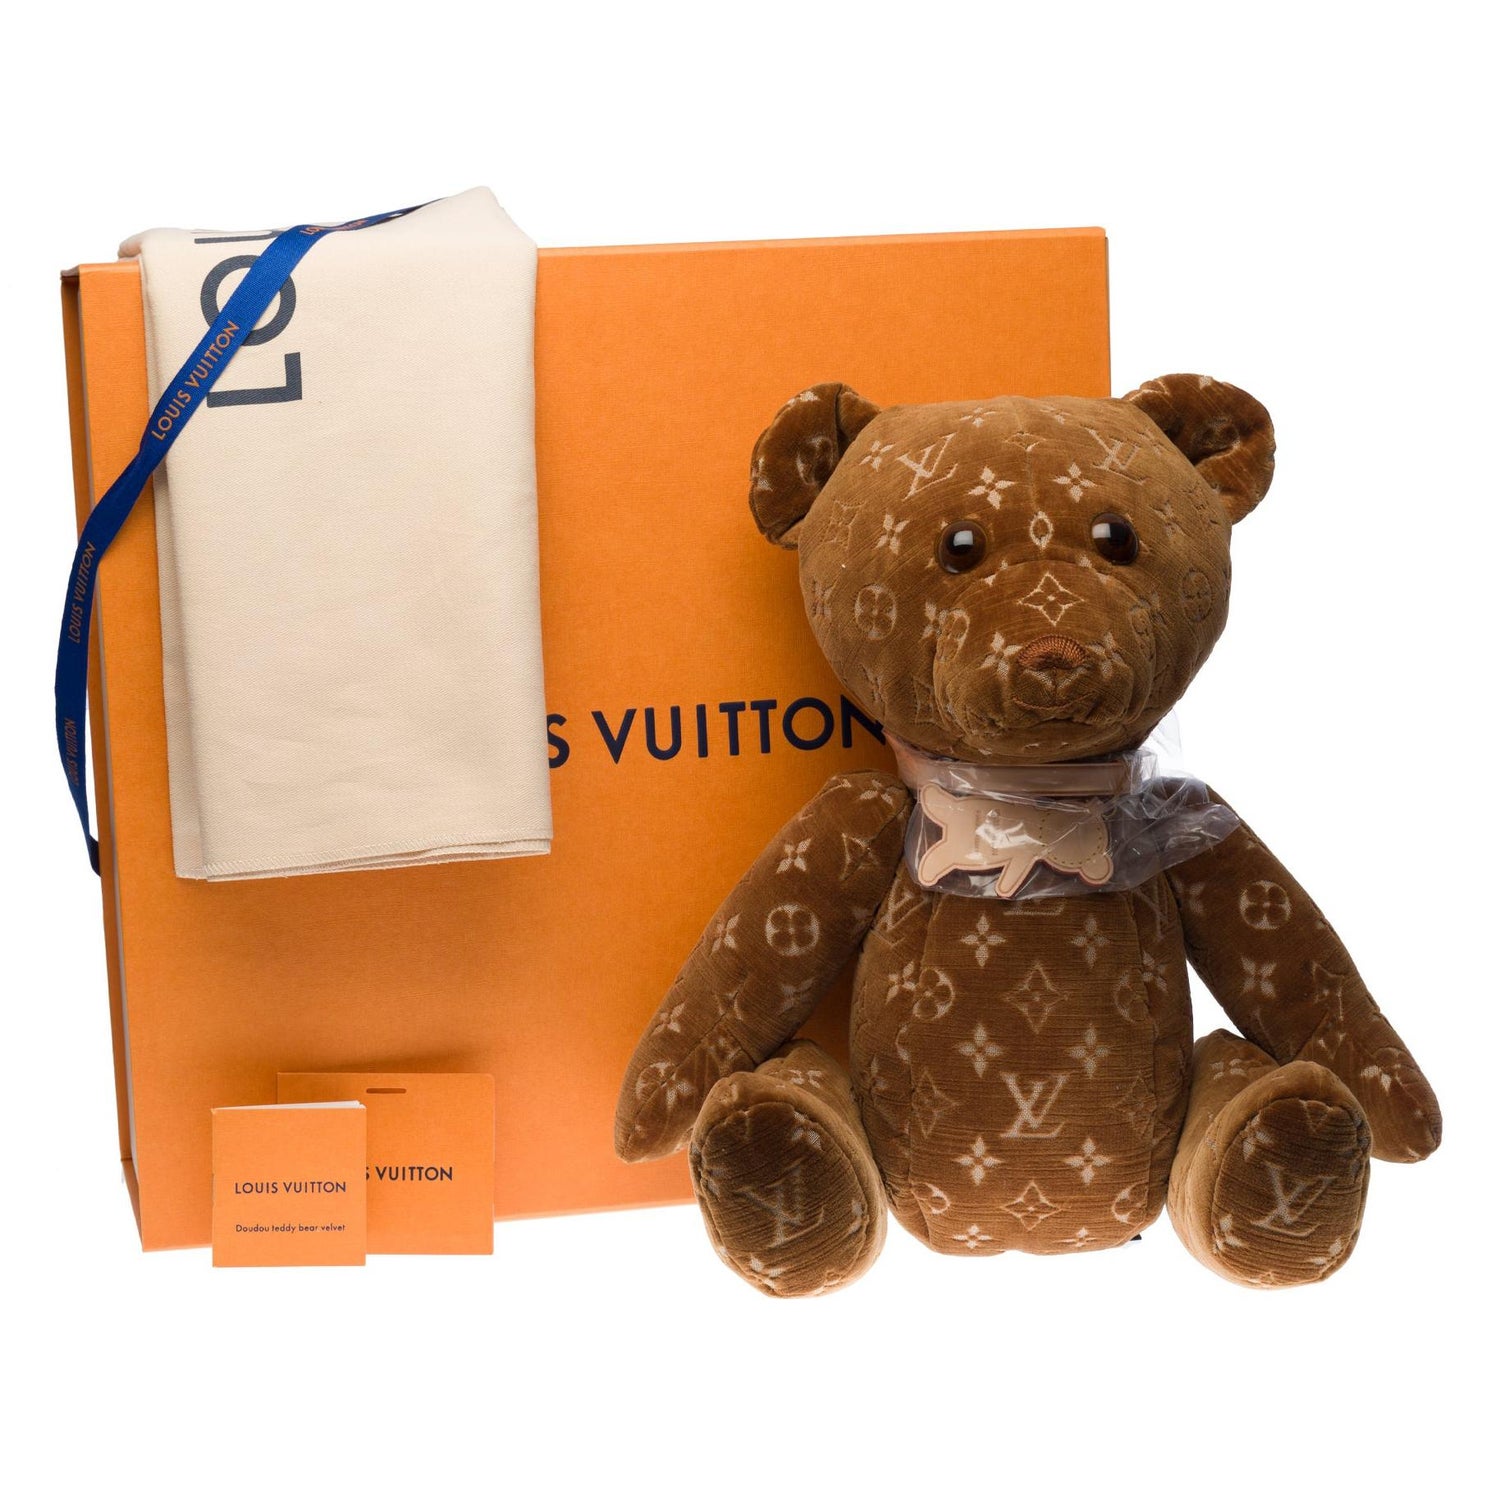 Lv Teddy Bear - For Sale on 1stDibs